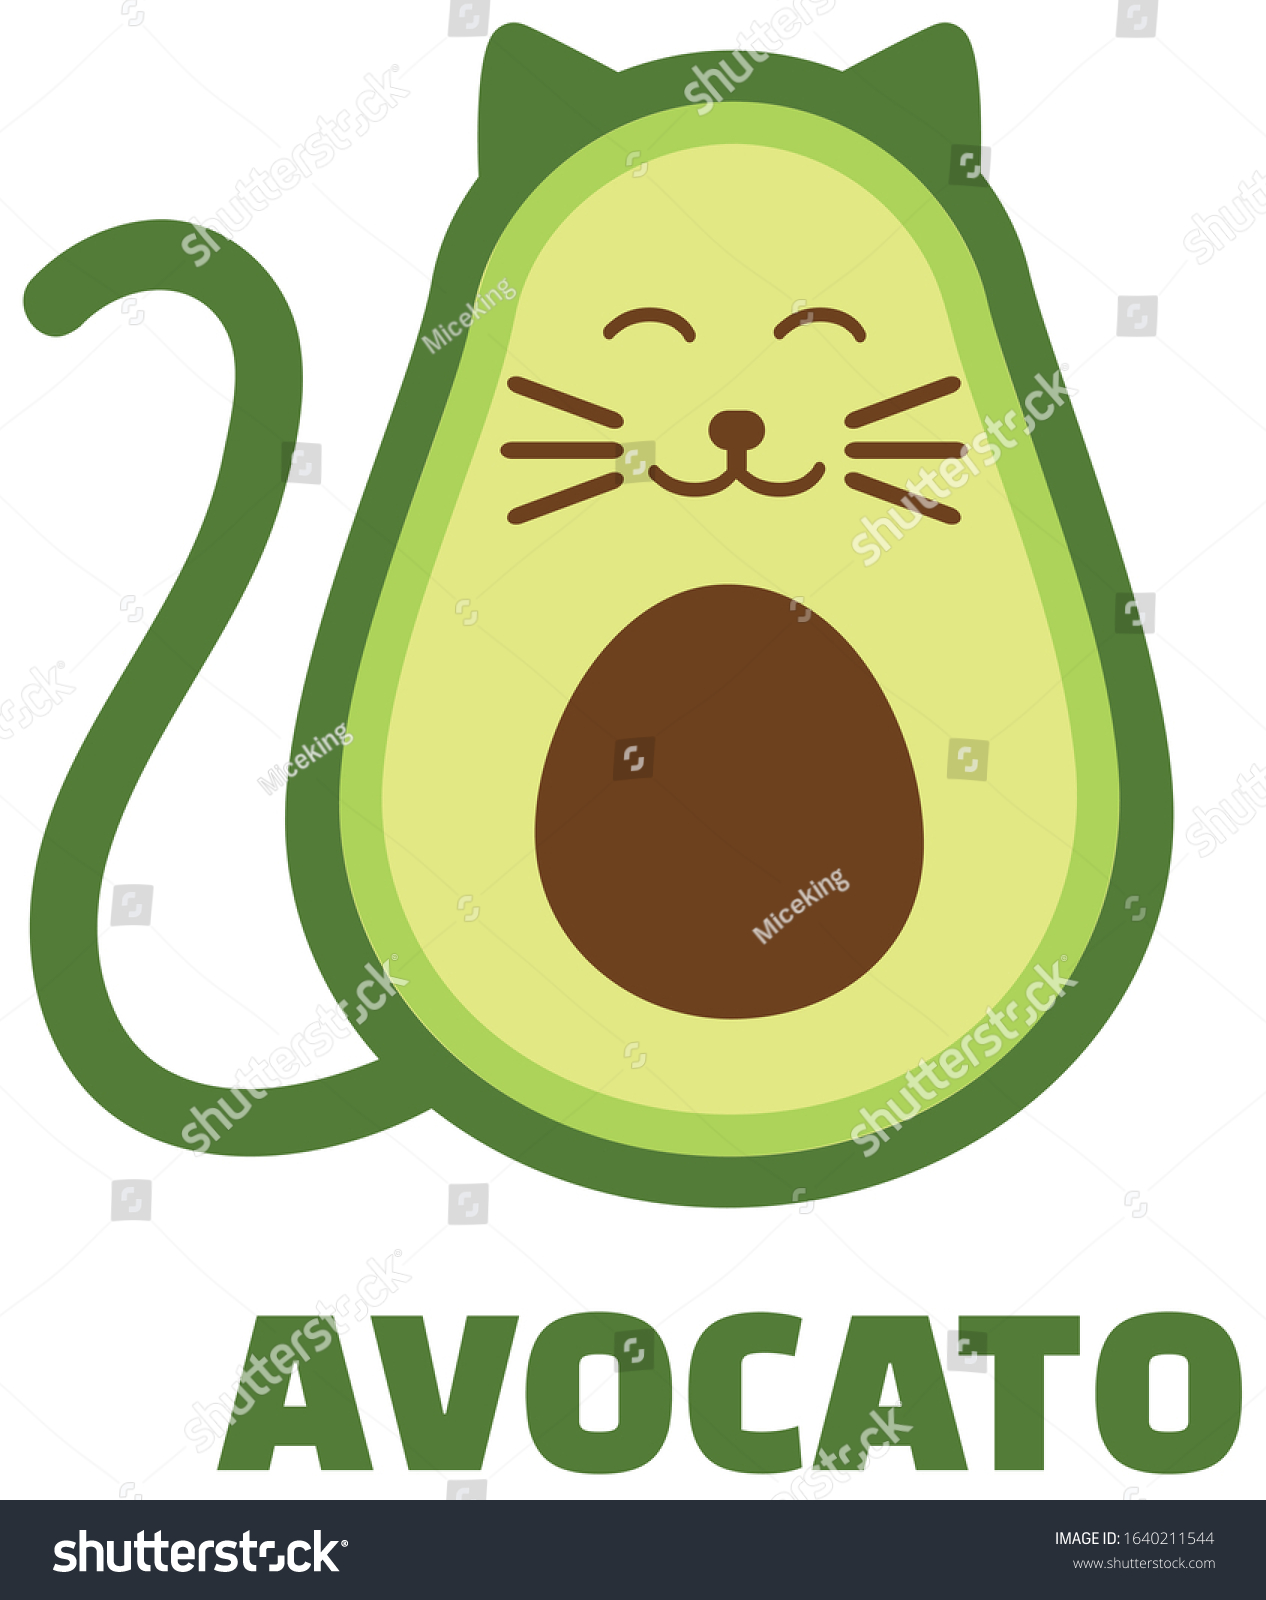 Авокадо котик картинки